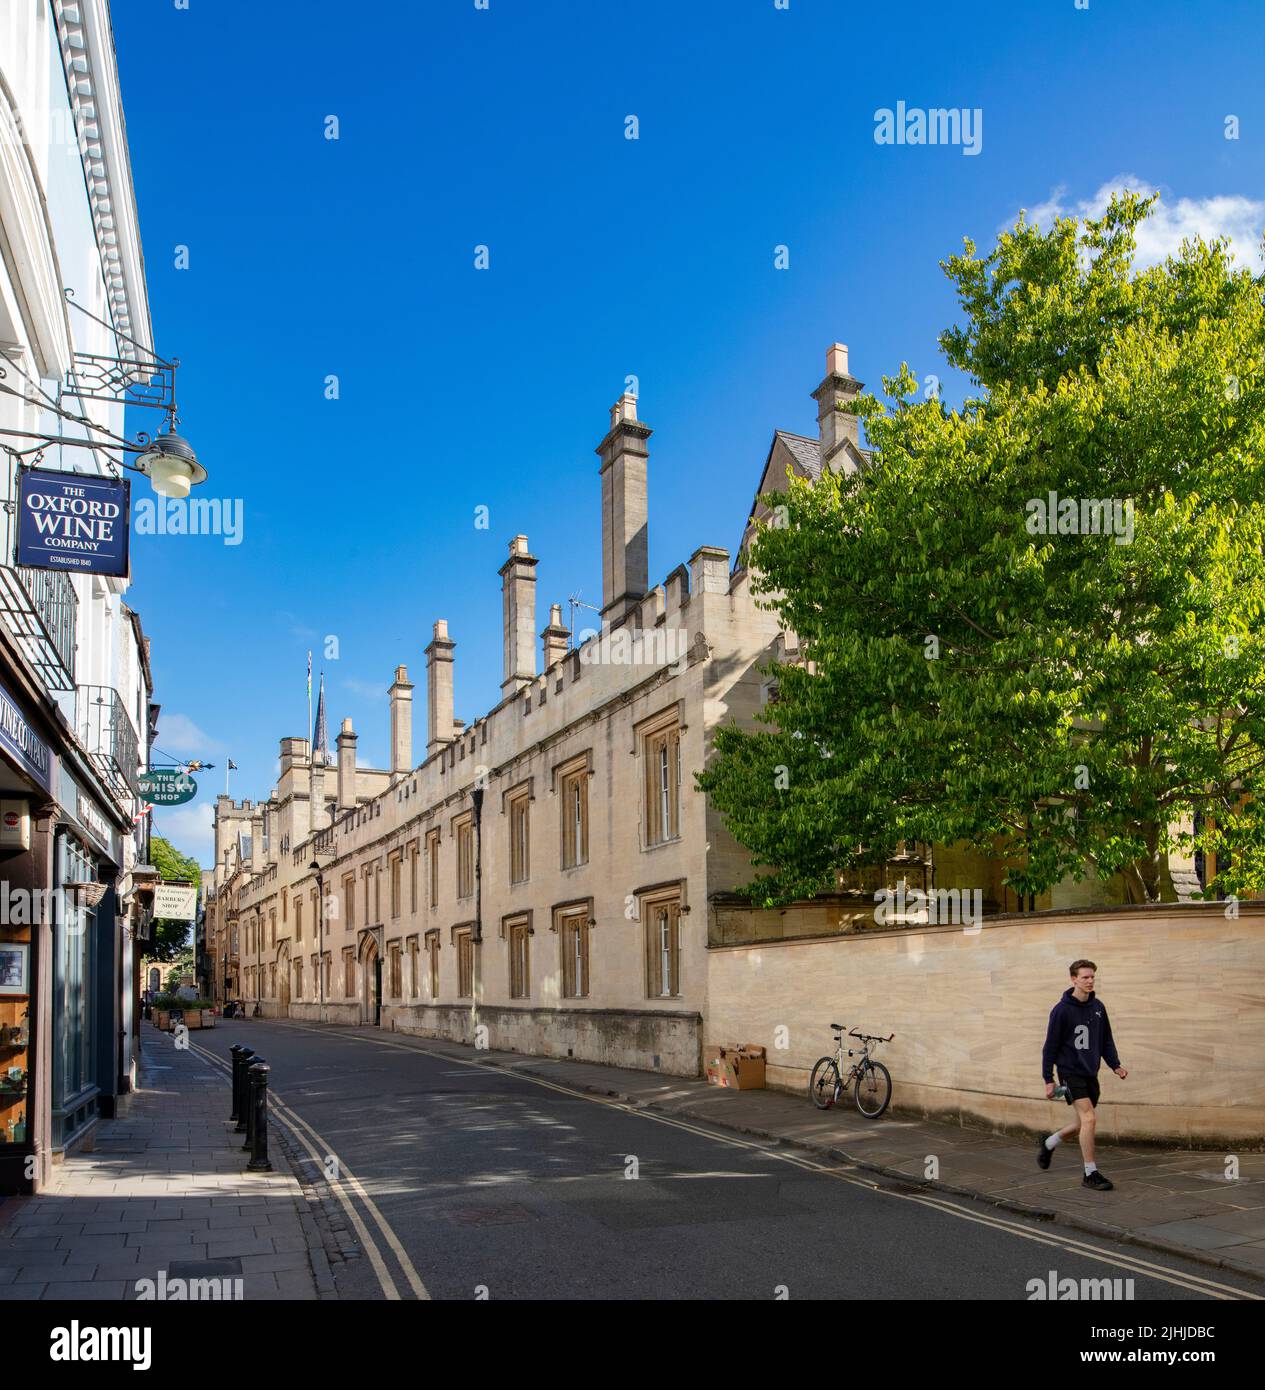 Turl St, Oxford, Großbritannien; Lincoln College auf der rechten Seite Stockfoto